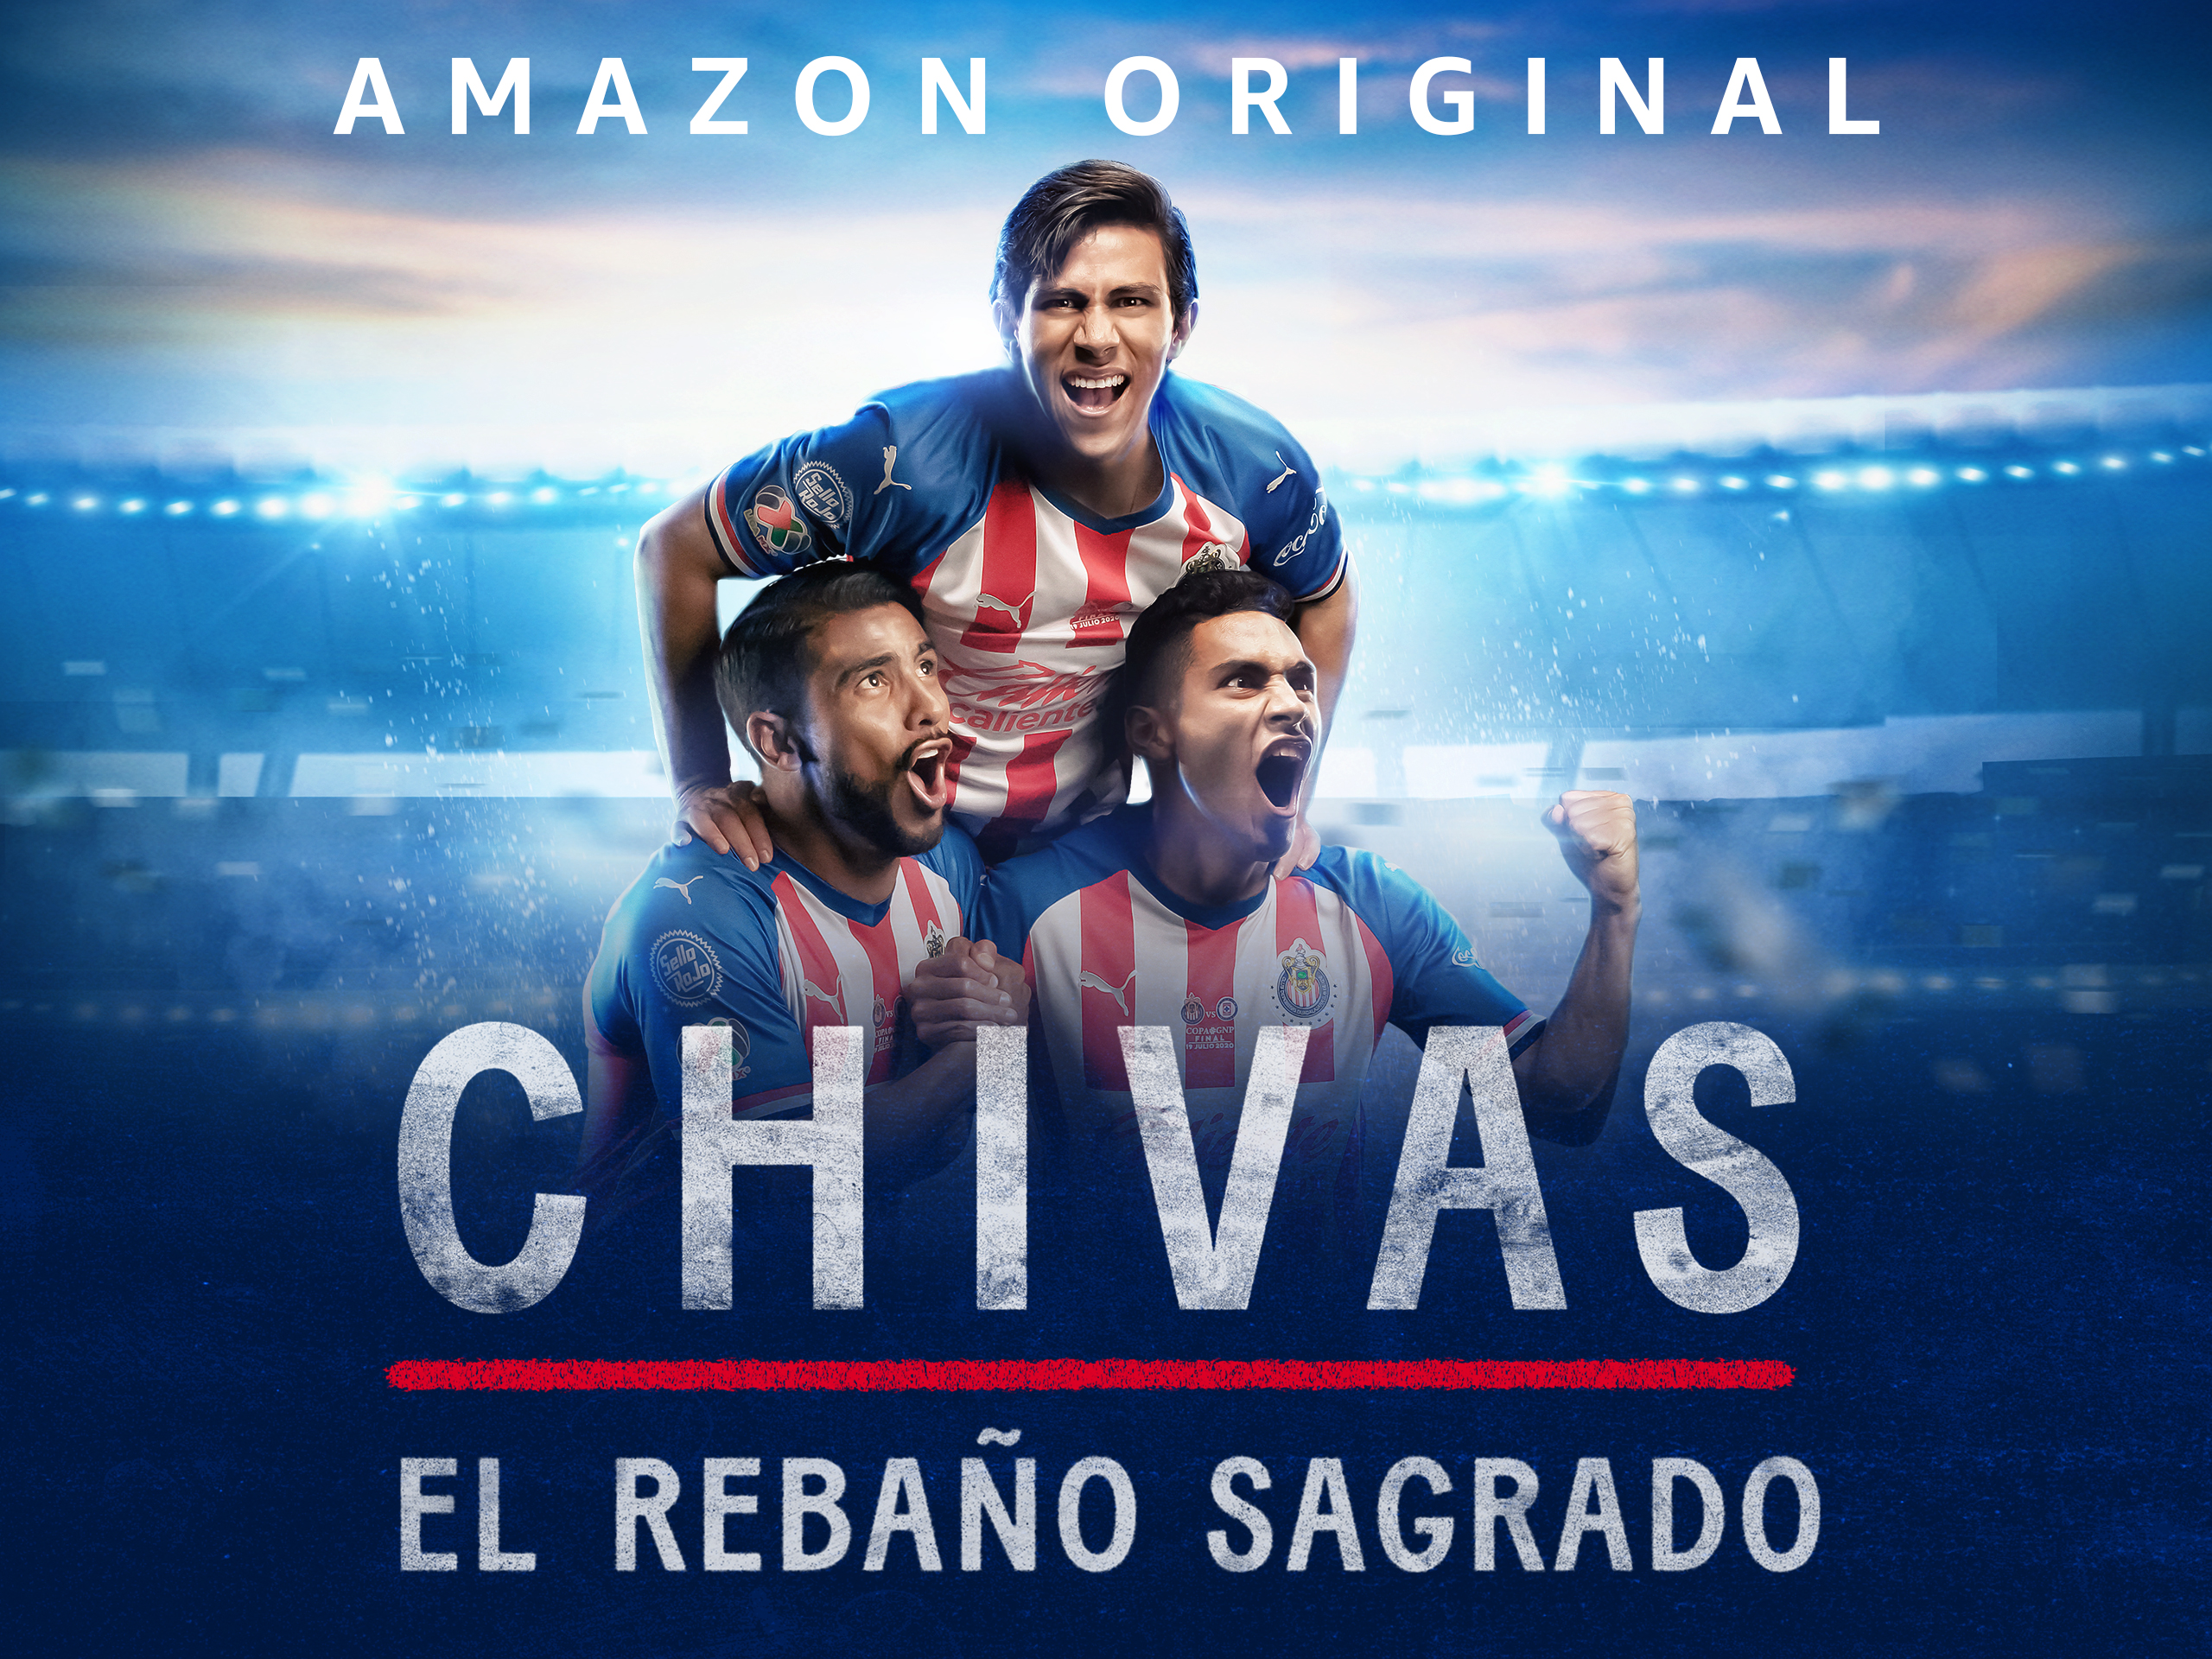 How to Watch Chivas El Rebaño Sagrado on Prime Video